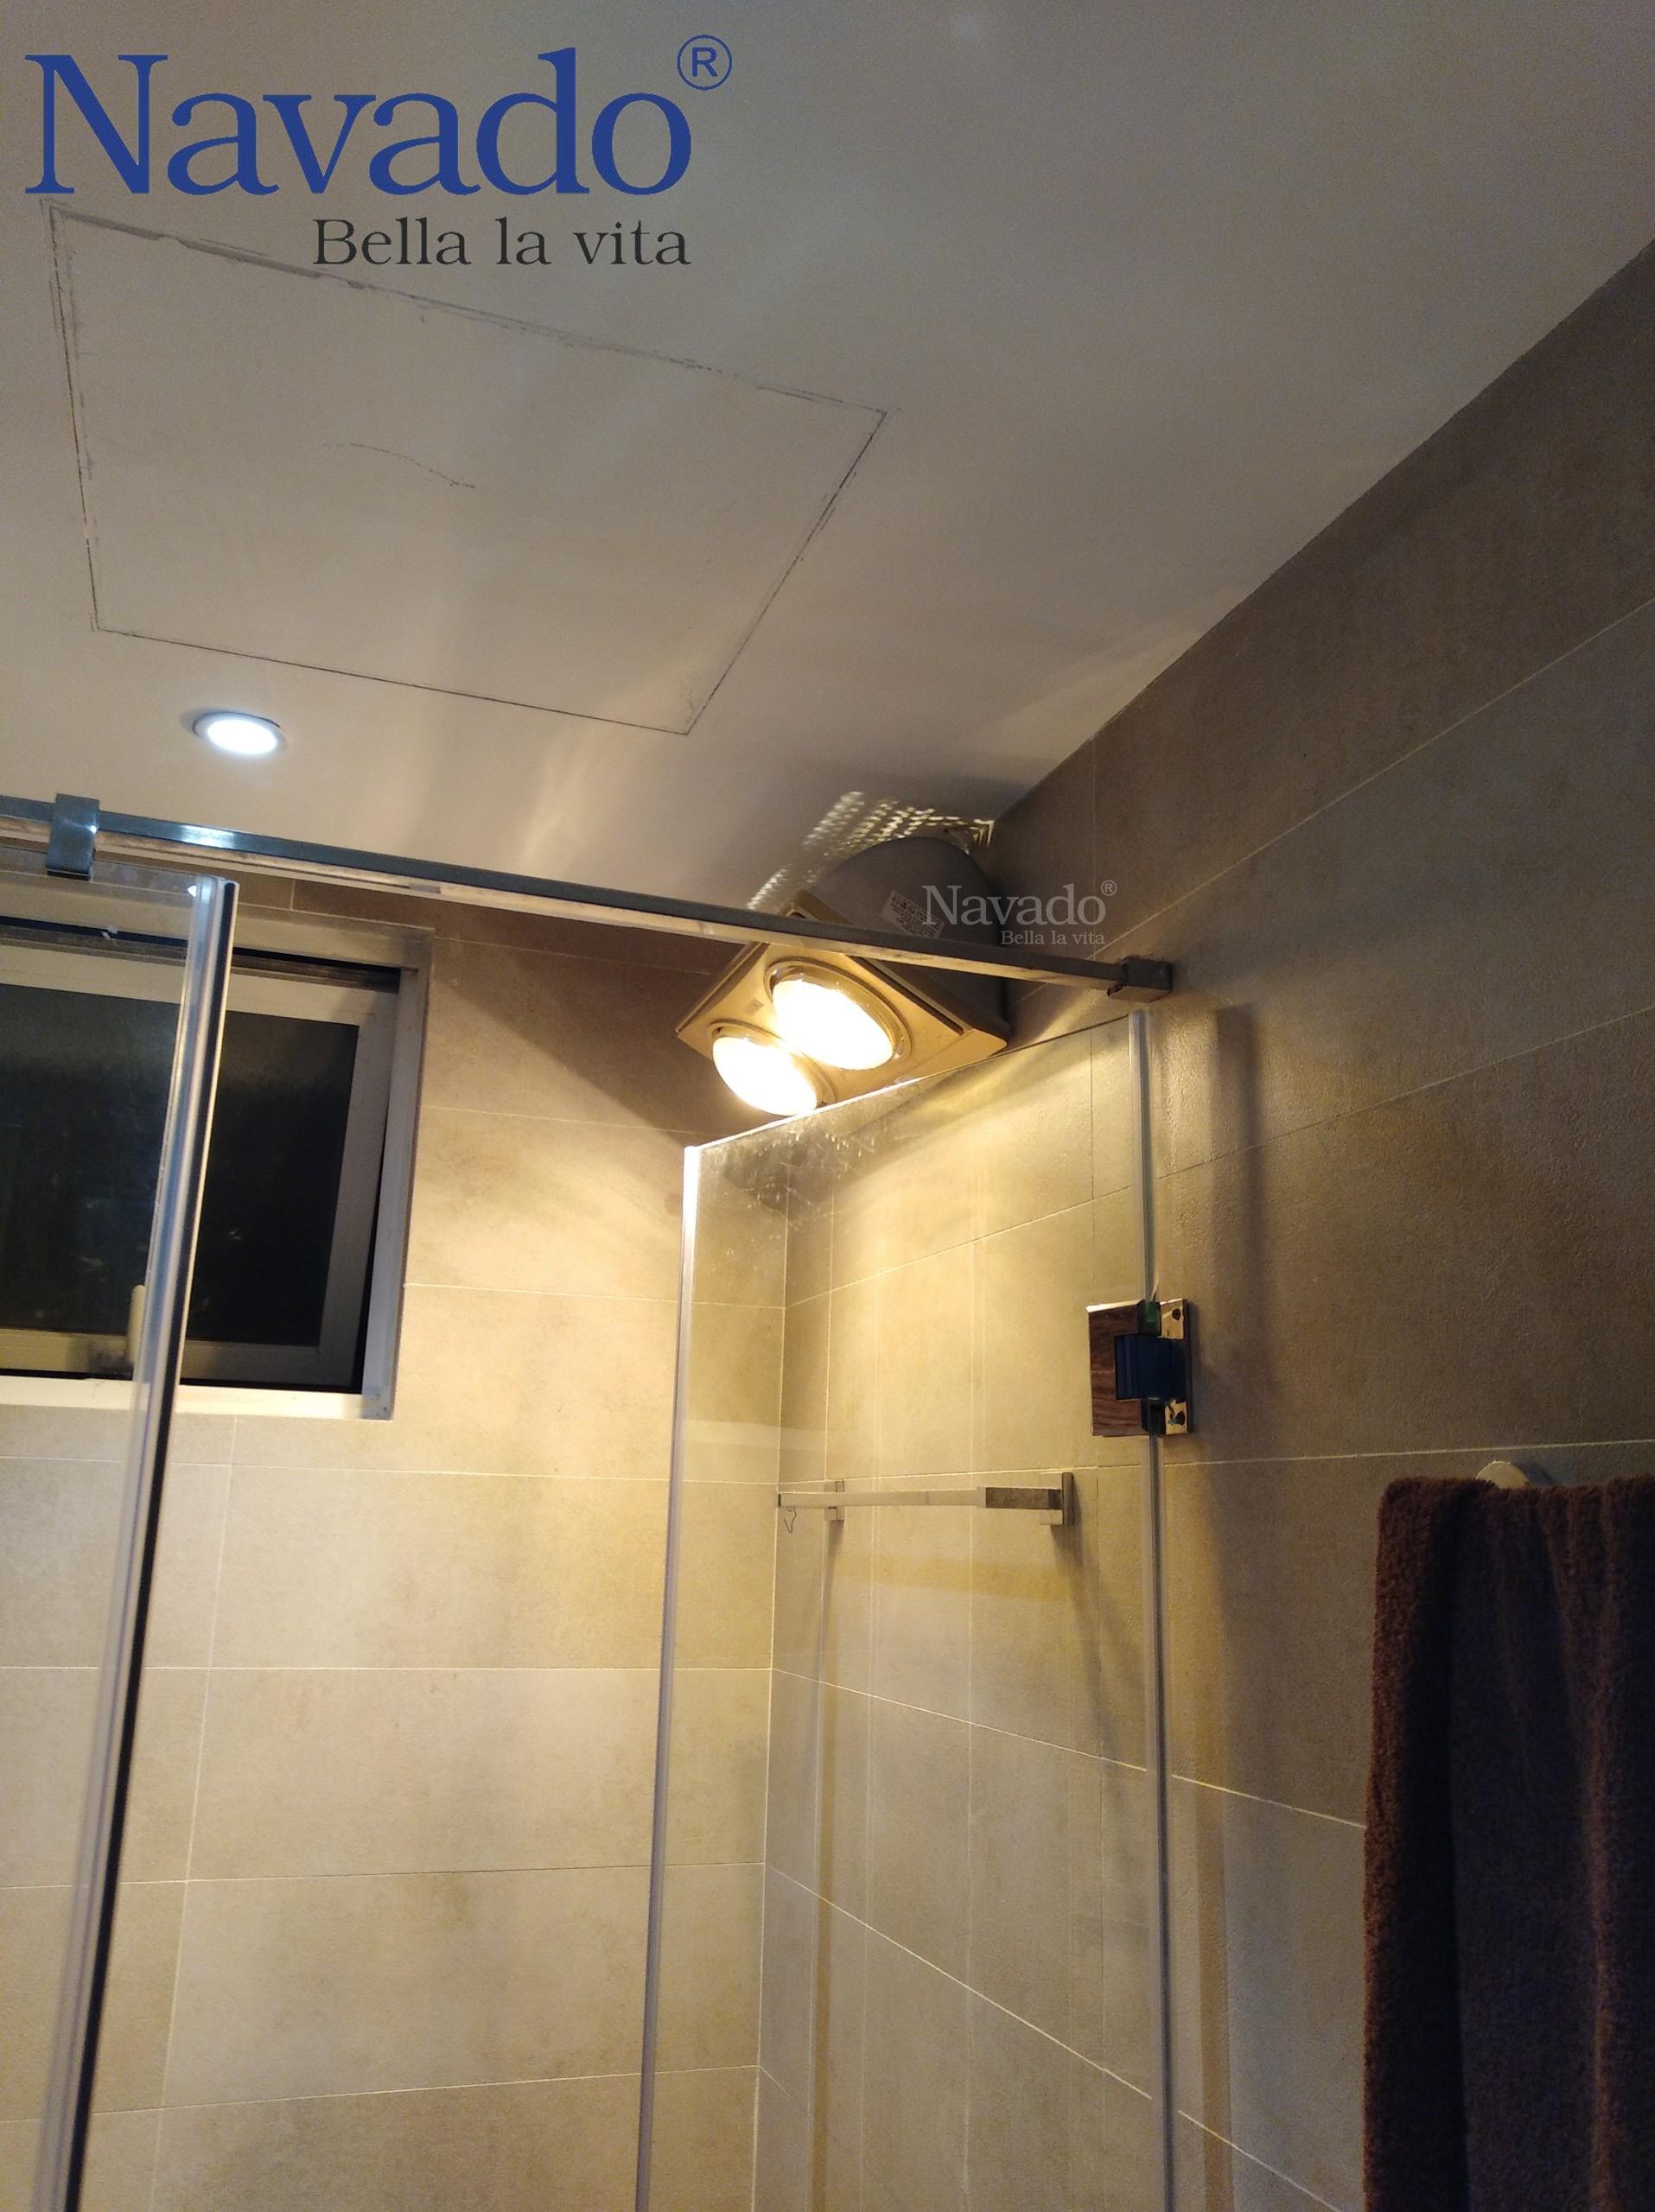 Đèn sưởi treo tường: Đèn sưởi treo tường giúp bạn giữ ấm cơ thể ngay từ lúc bước vào phòng tắm vào mùa đông. Sản phẩm được thiết kế tối ưu để sử dụng năng lượng tiết kiệm nhất. Bạn sẽ cảm thấy thú vị khi trải nghiệm những ưu điểm của đèn sưởi treo tường trong phòng tắm nhà bạn.